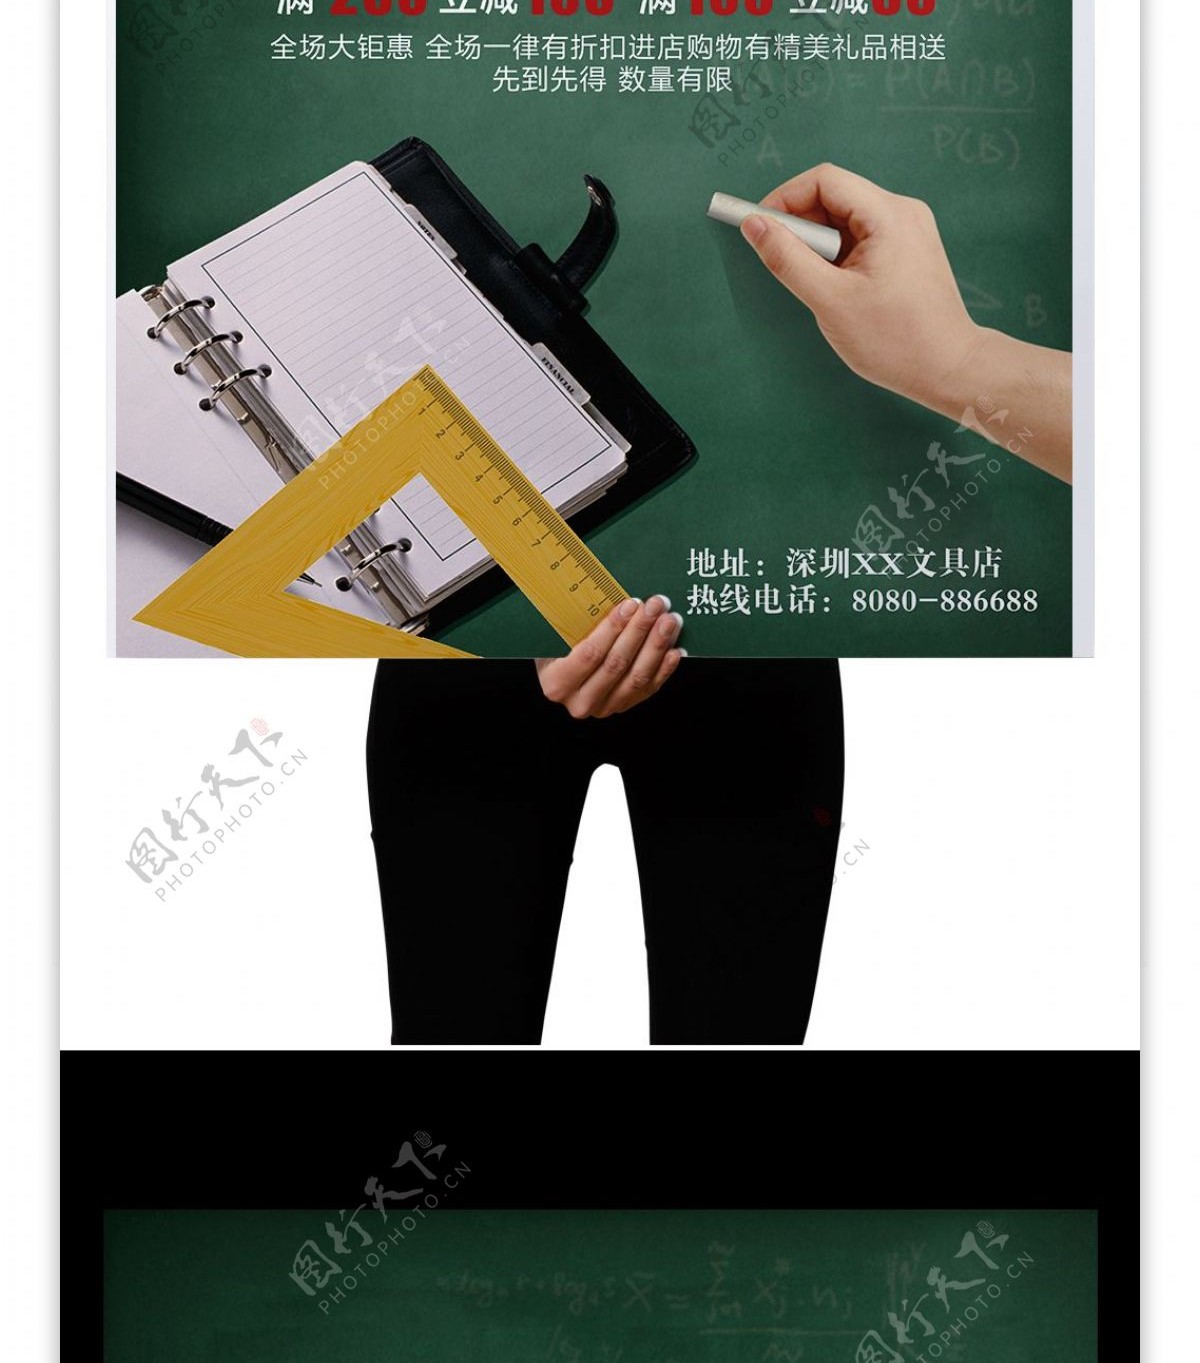 教师节快乐黑板促销教学老师简约墨绿海报